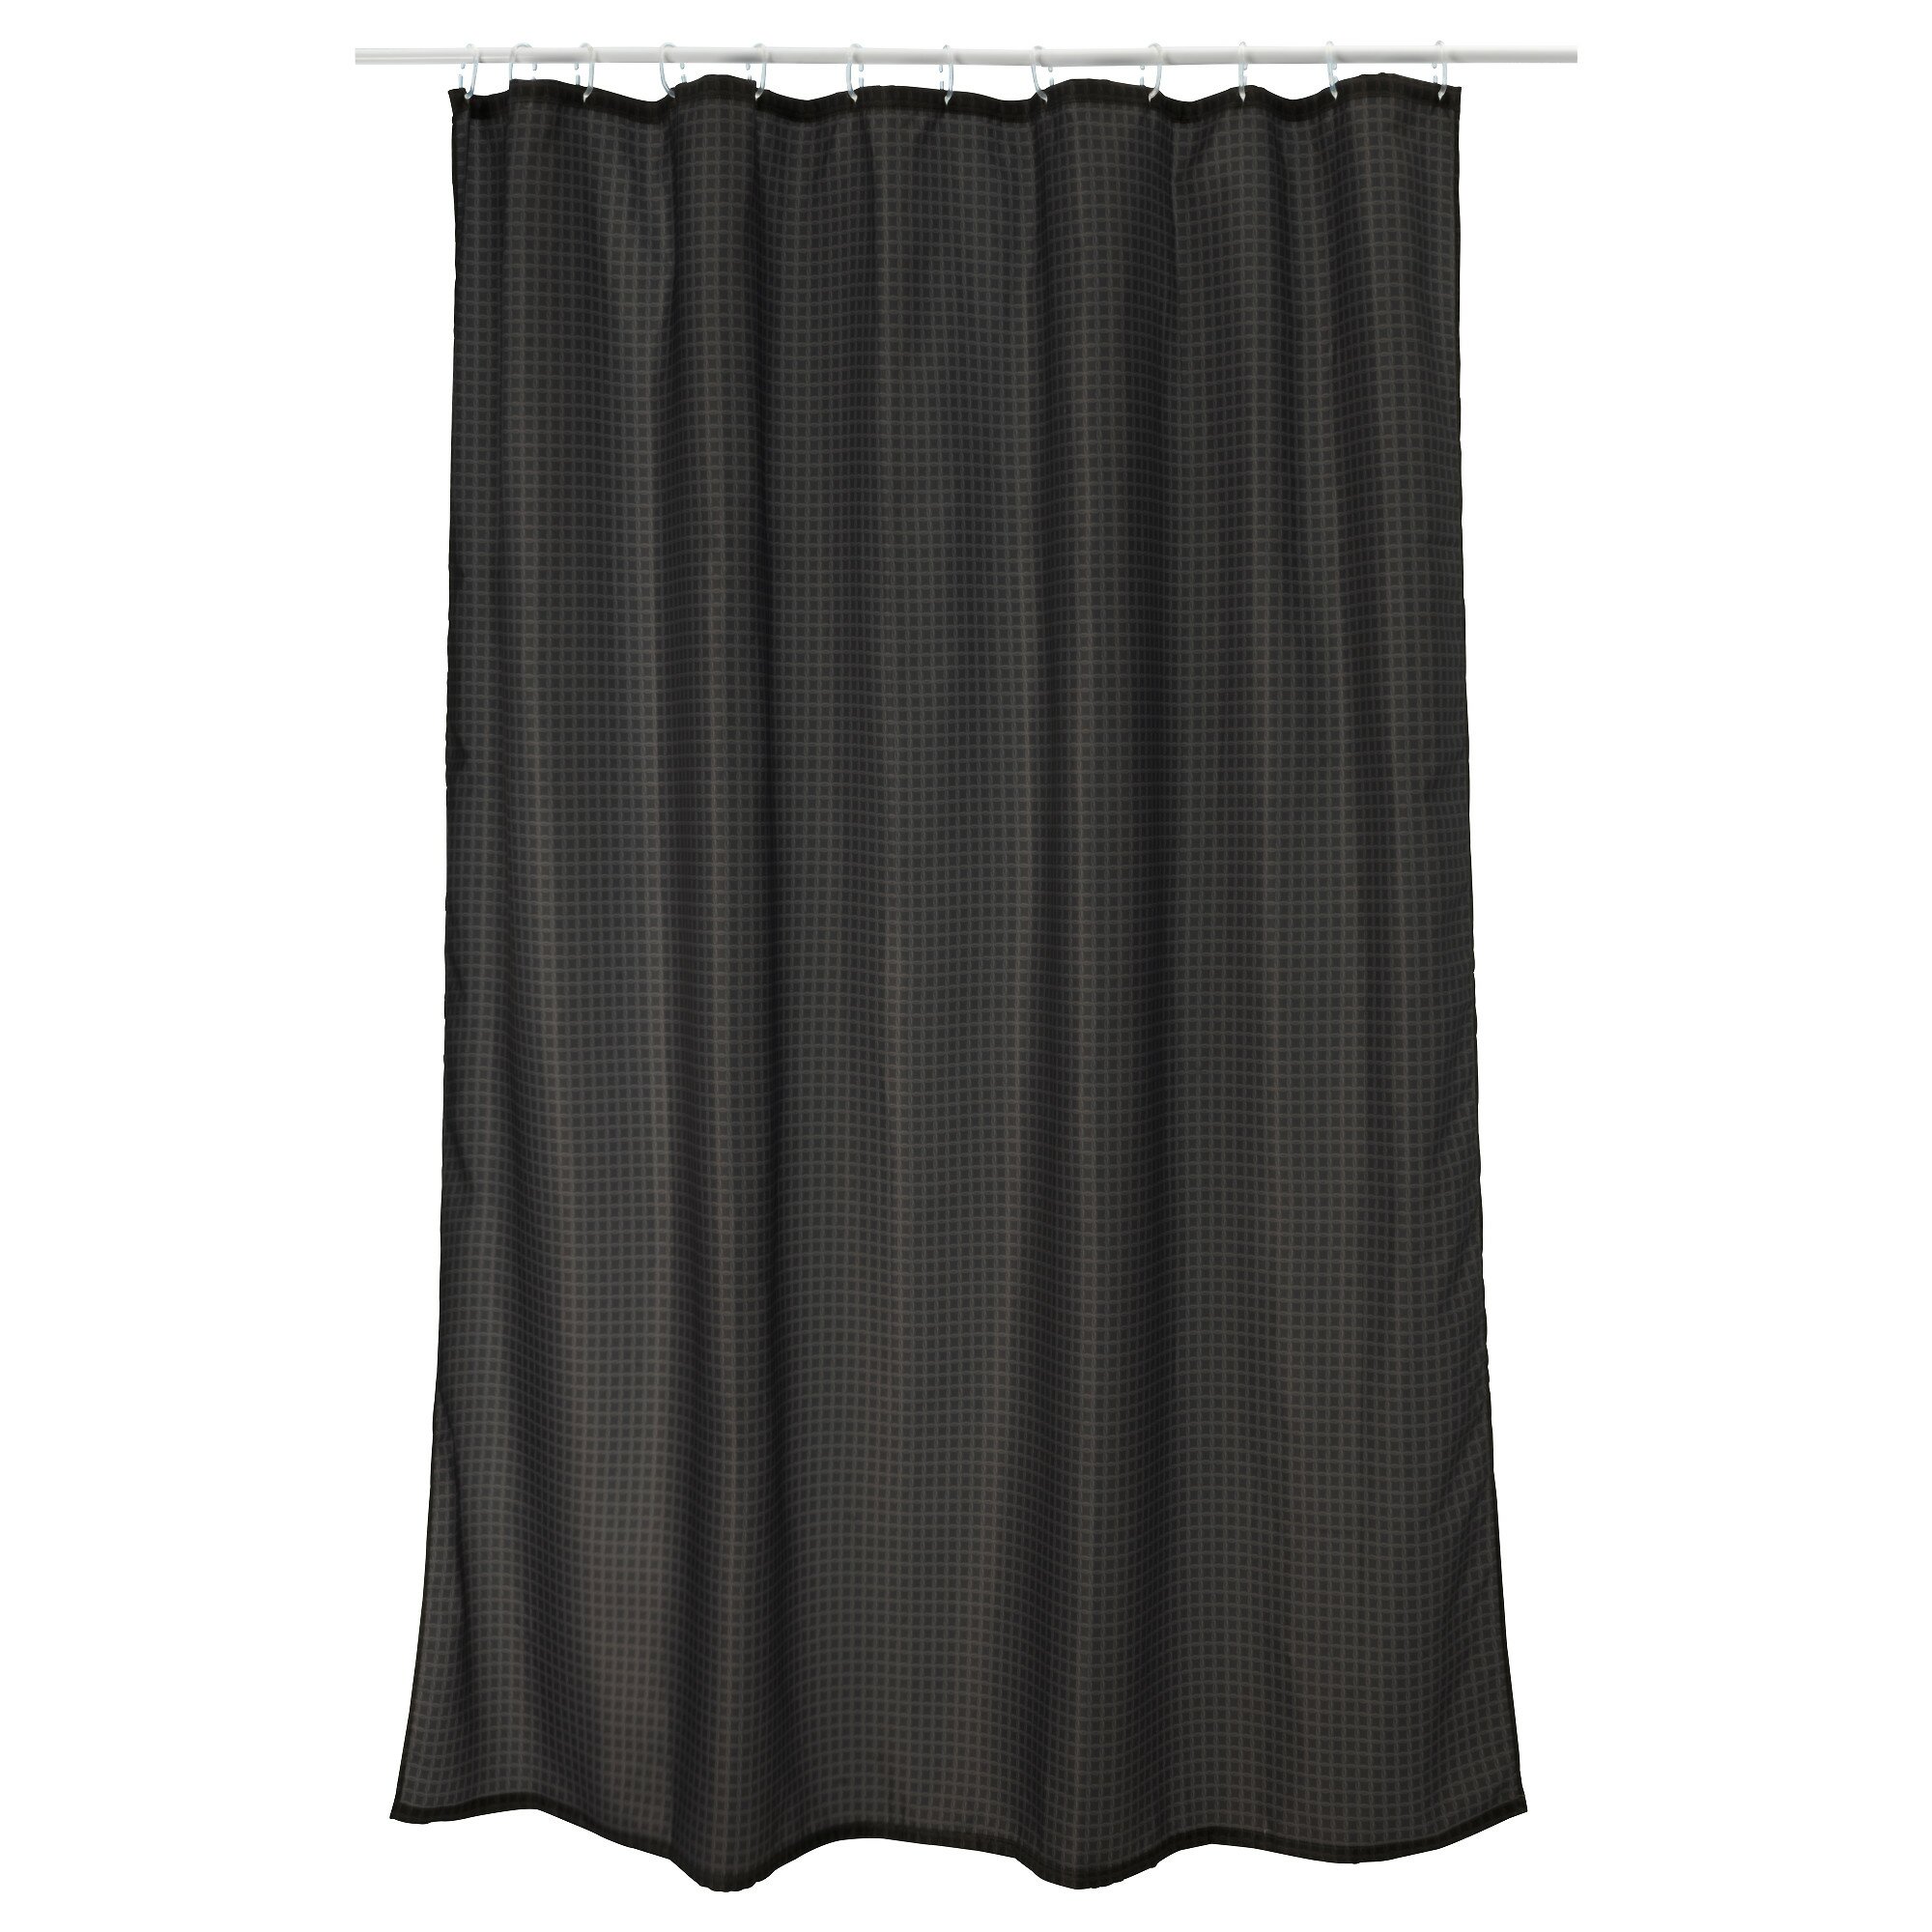 Ikea Shower Curtain for Best Your Bathroom Decoration: Tvingen Shower Curtain | Ikea Shower Curtain | Bathroom Curtain Rods